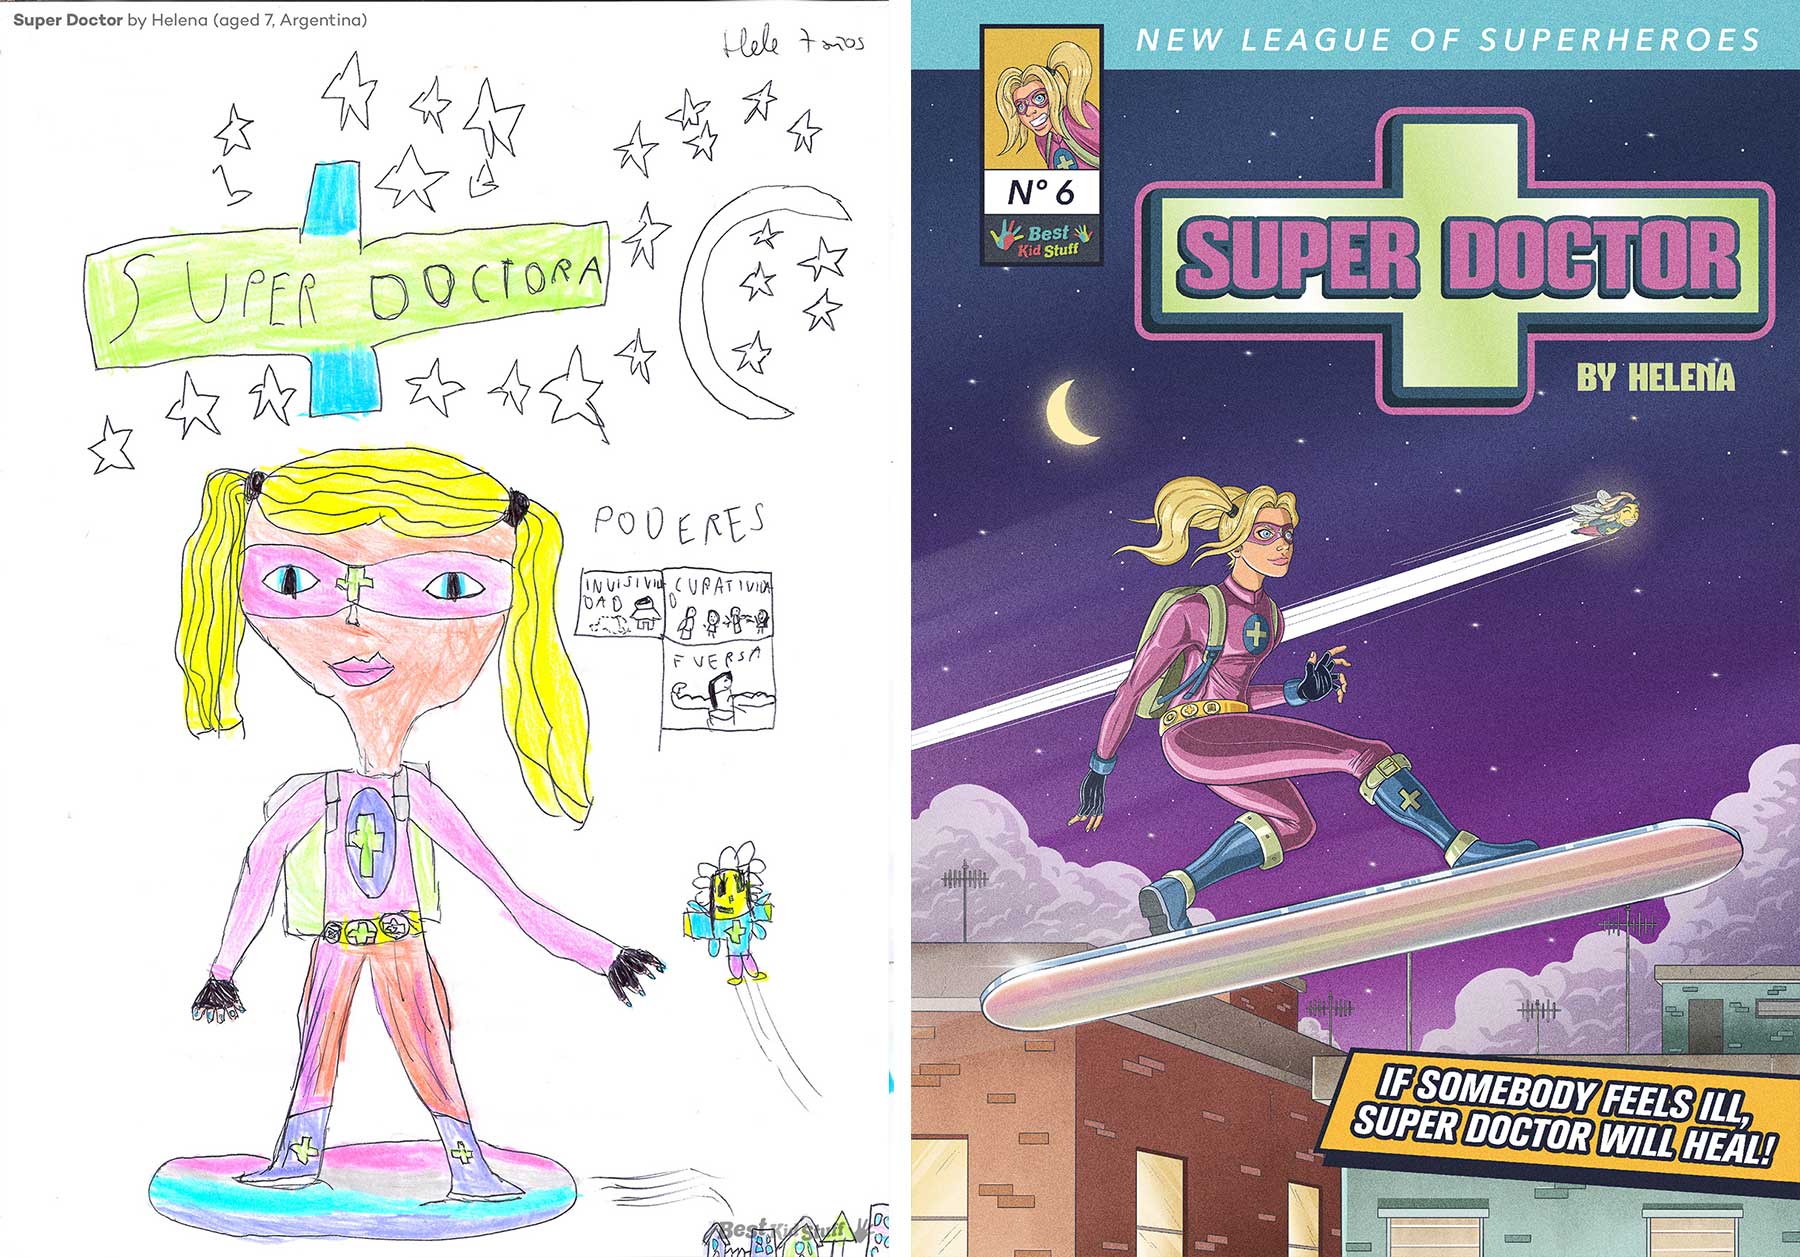 Künstler illustrieren Comic-Cover aus Kinderzeichungen von Superhelden Kinder-malen-Superhelden-profis-illustrieren-comic-cover_05 